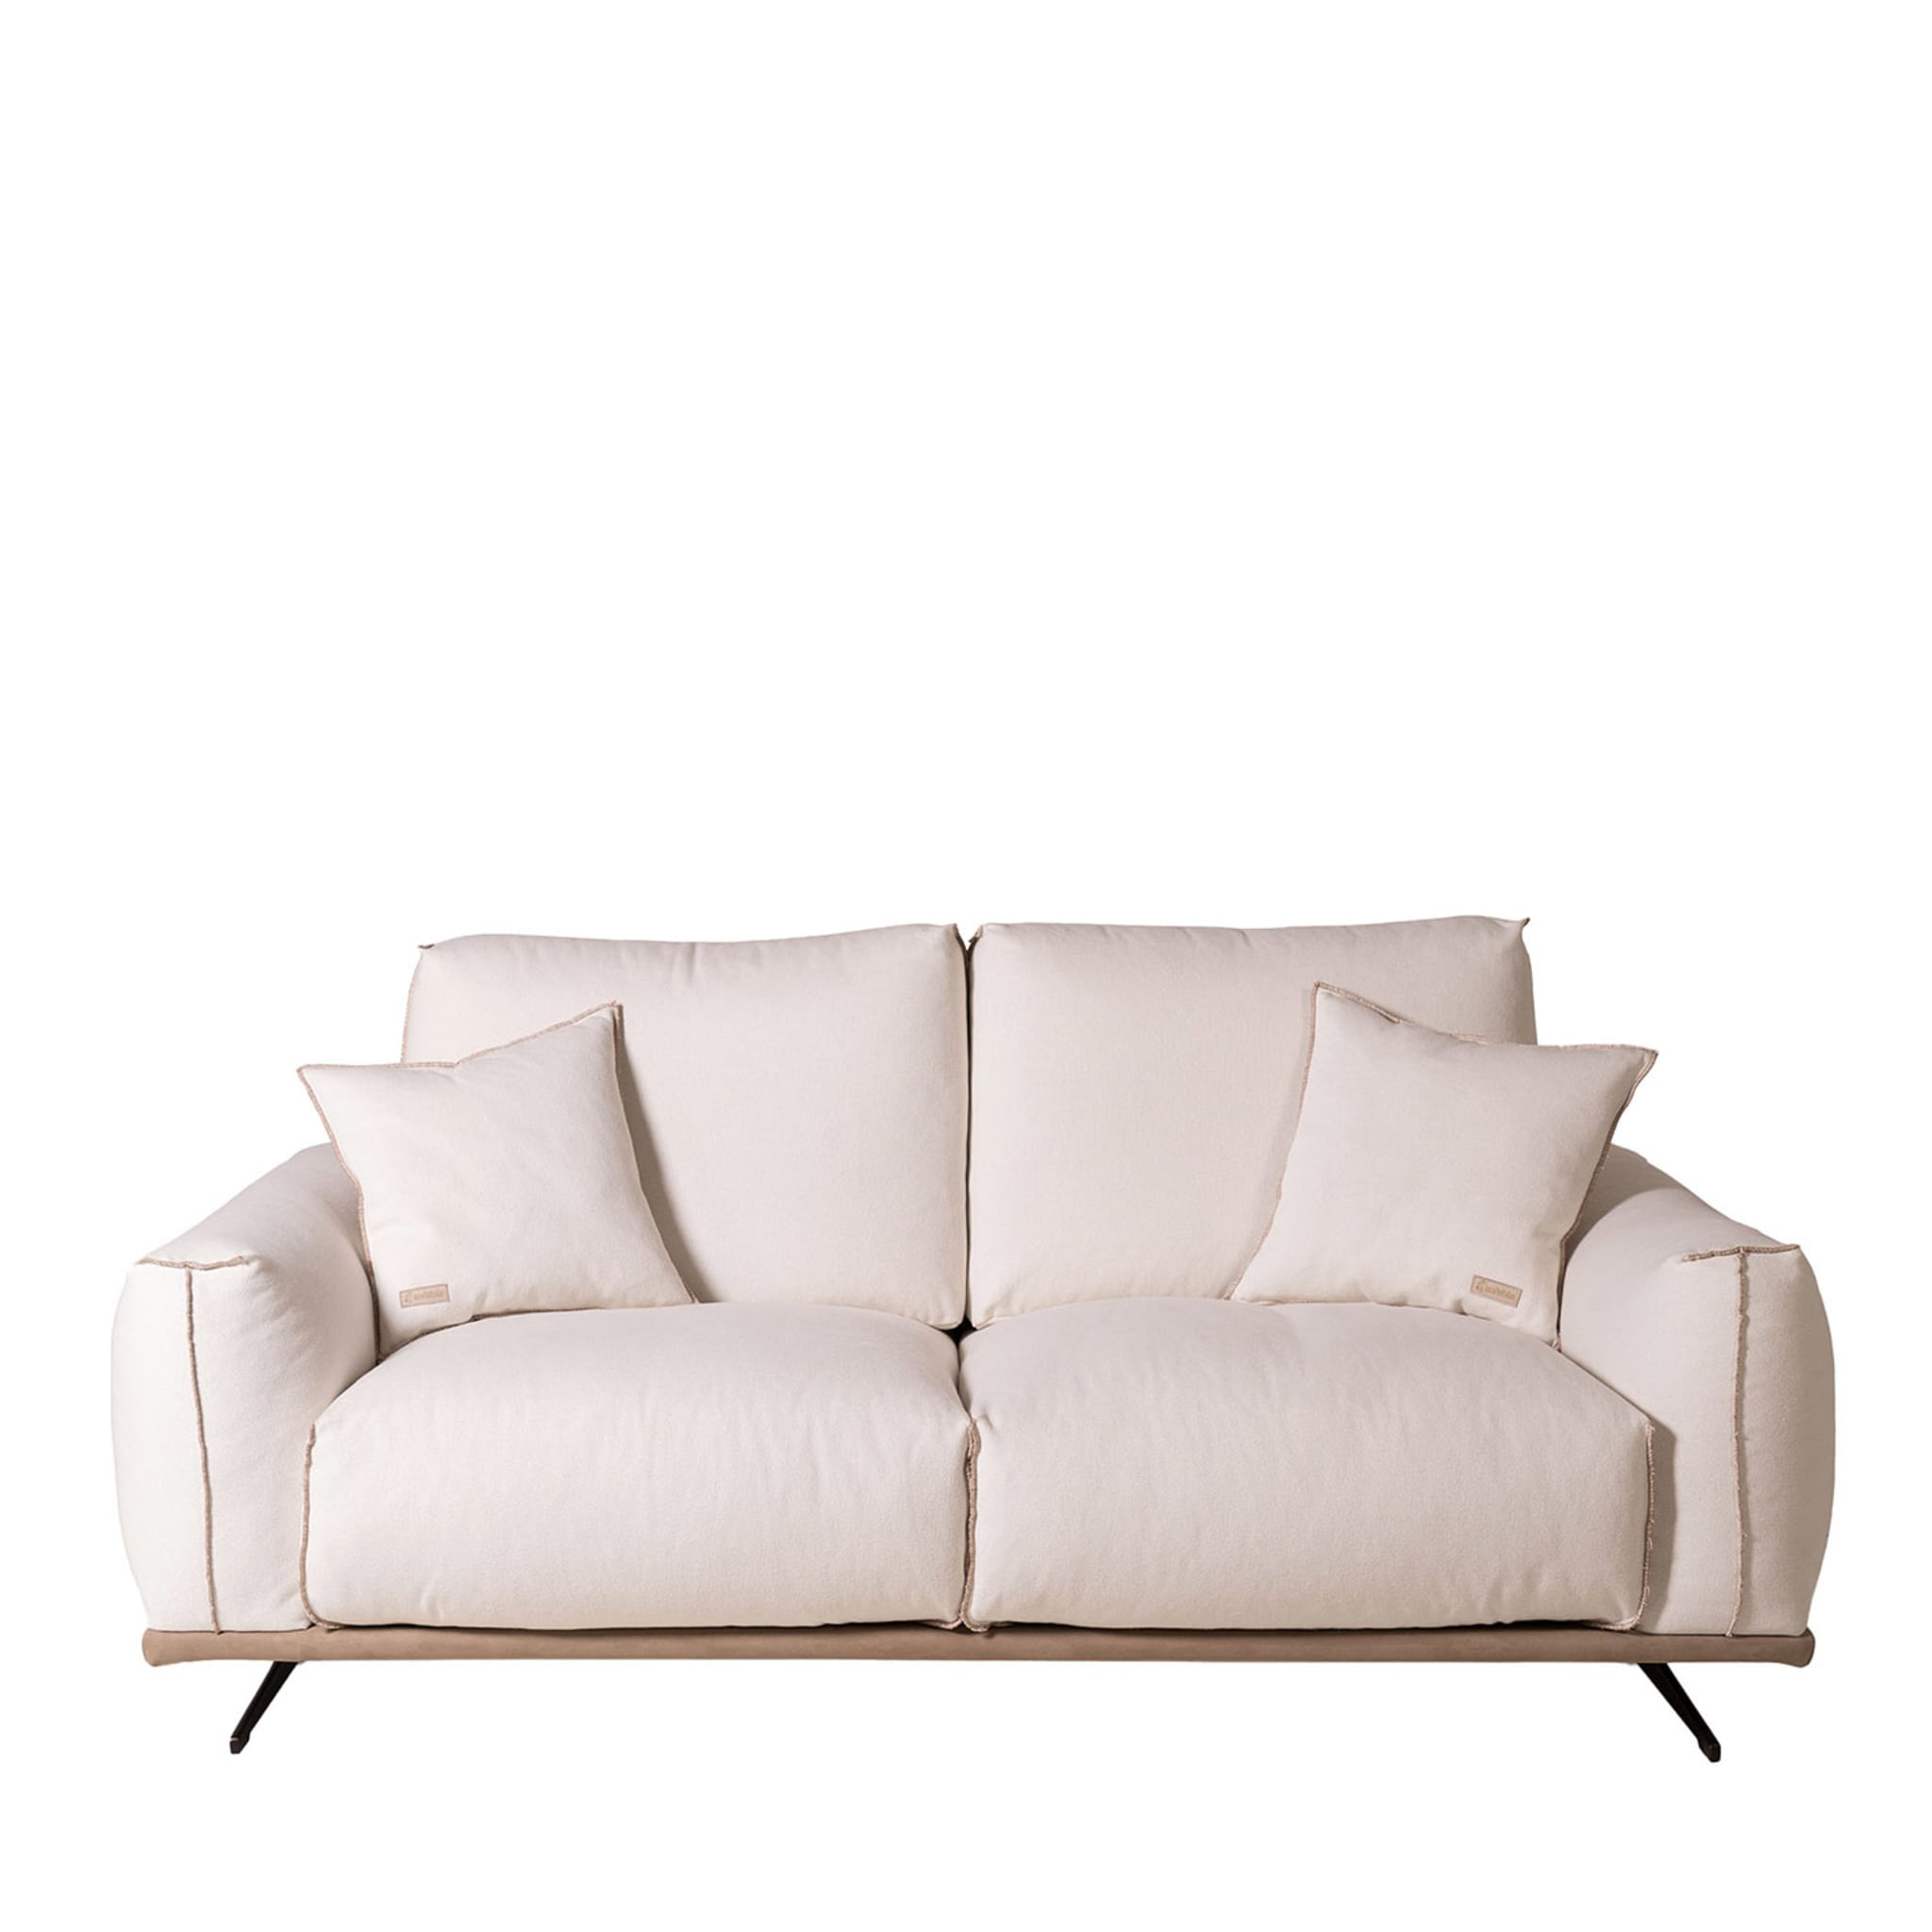 Boboli 2 Seater Sofa by Marco and Giulio Mantellassi - Main view